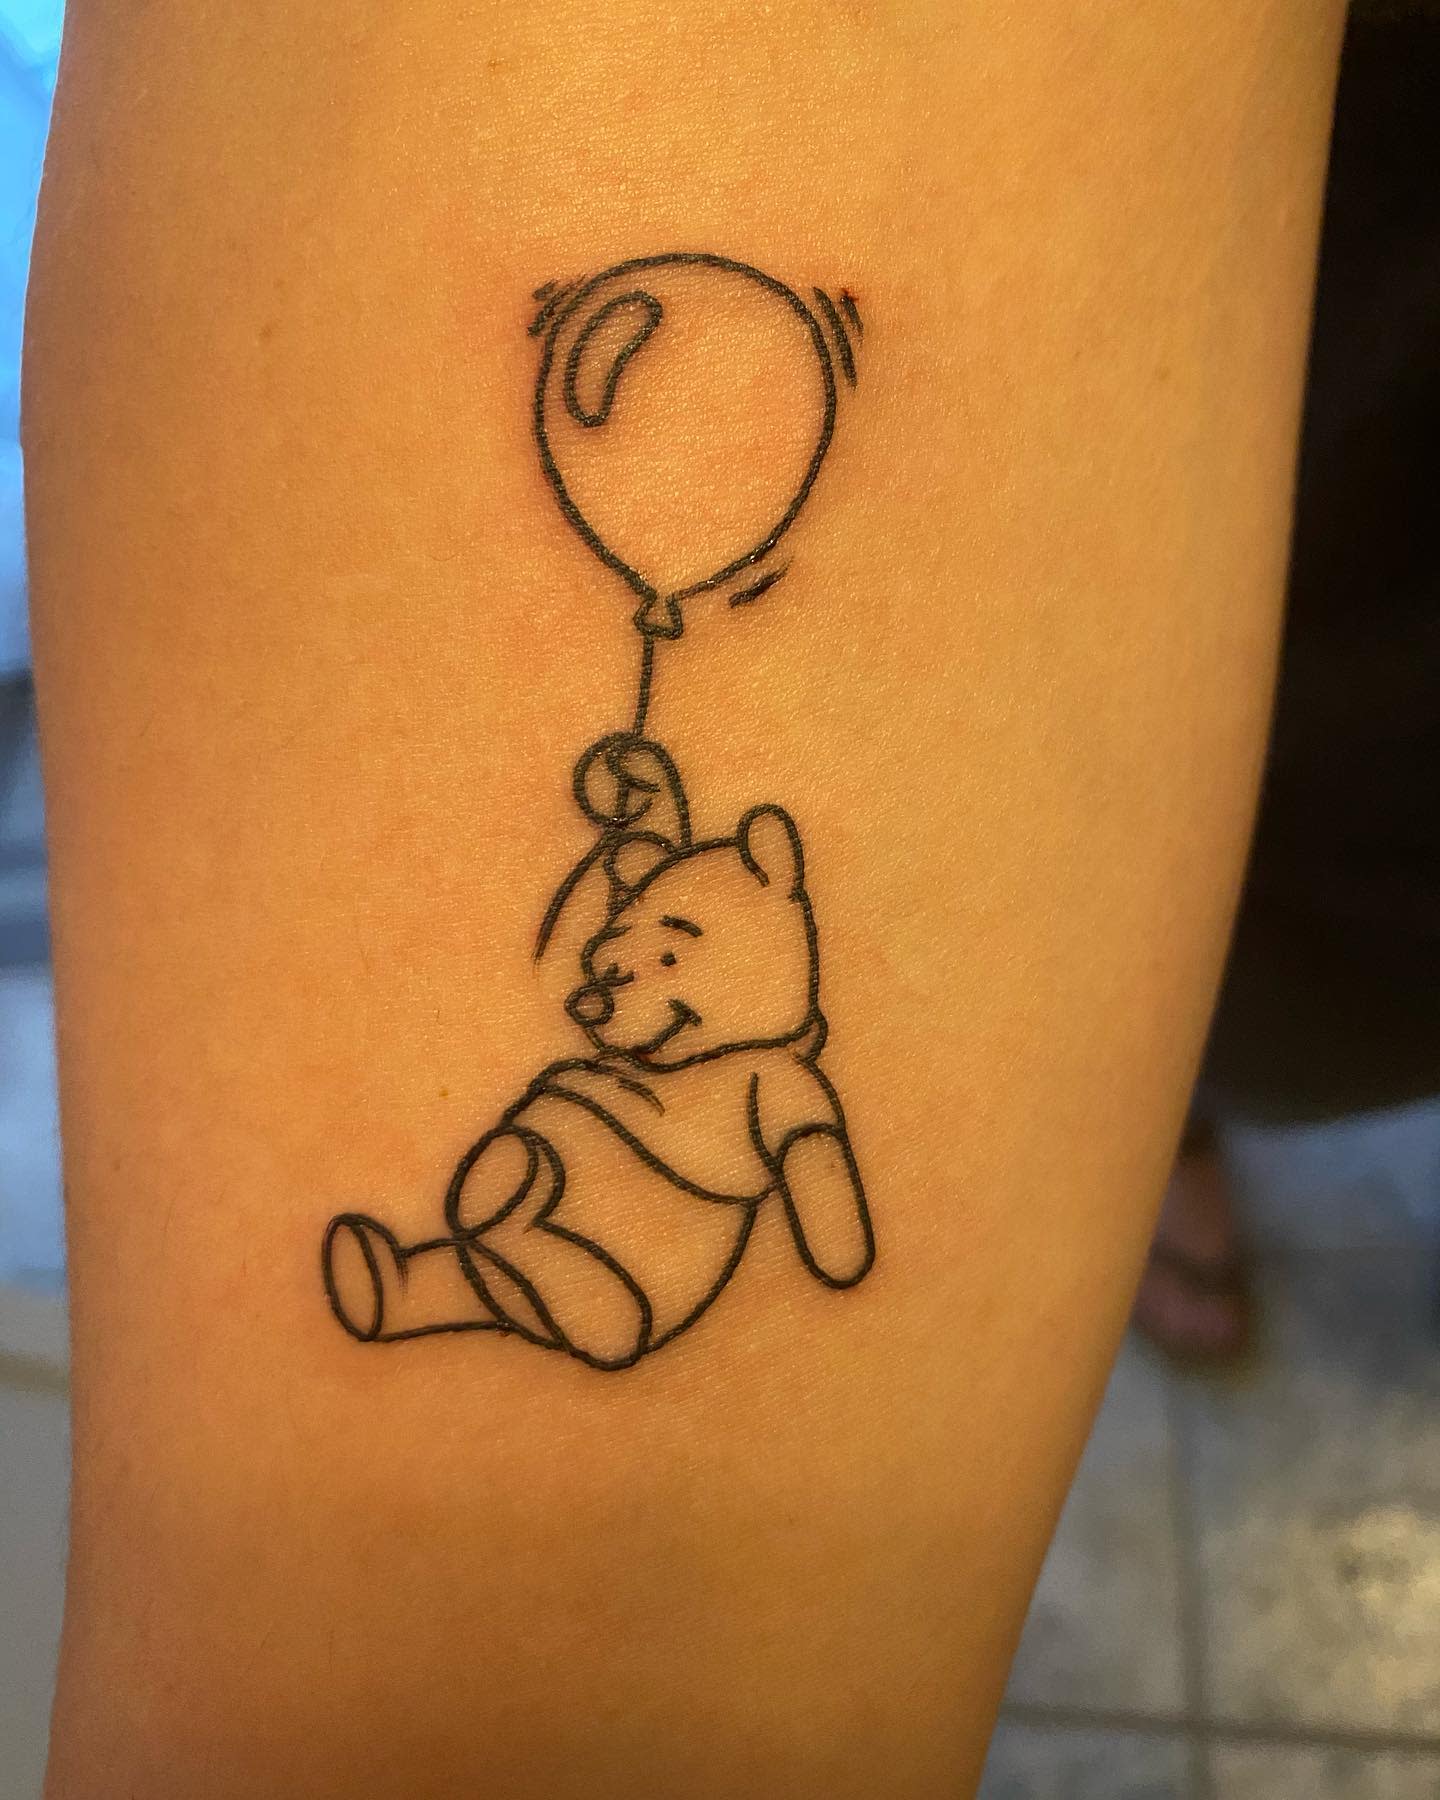 Esquema del tatuaje de Winnie the Pooh -hcvandegrift